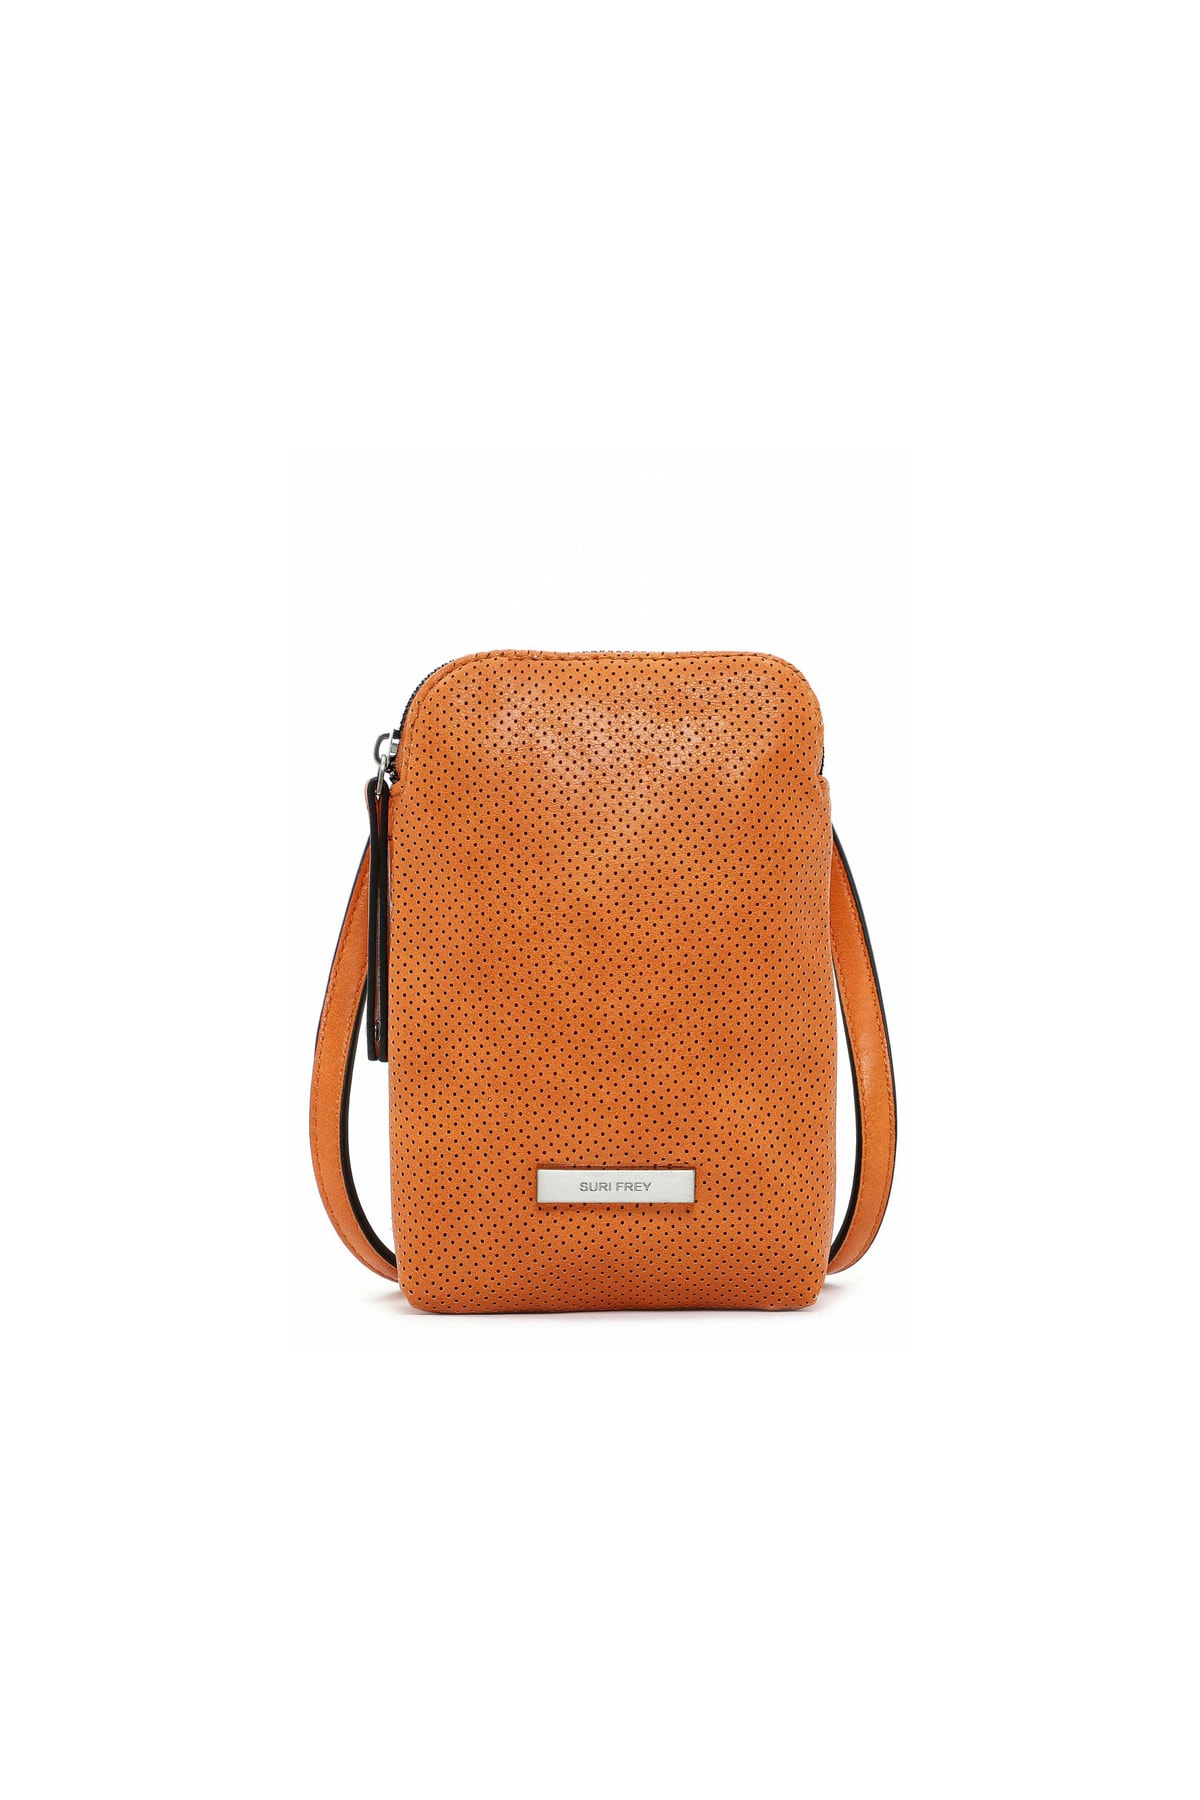 SURI FREY Handtasche Orange Strukturiert Fast ausverkauft